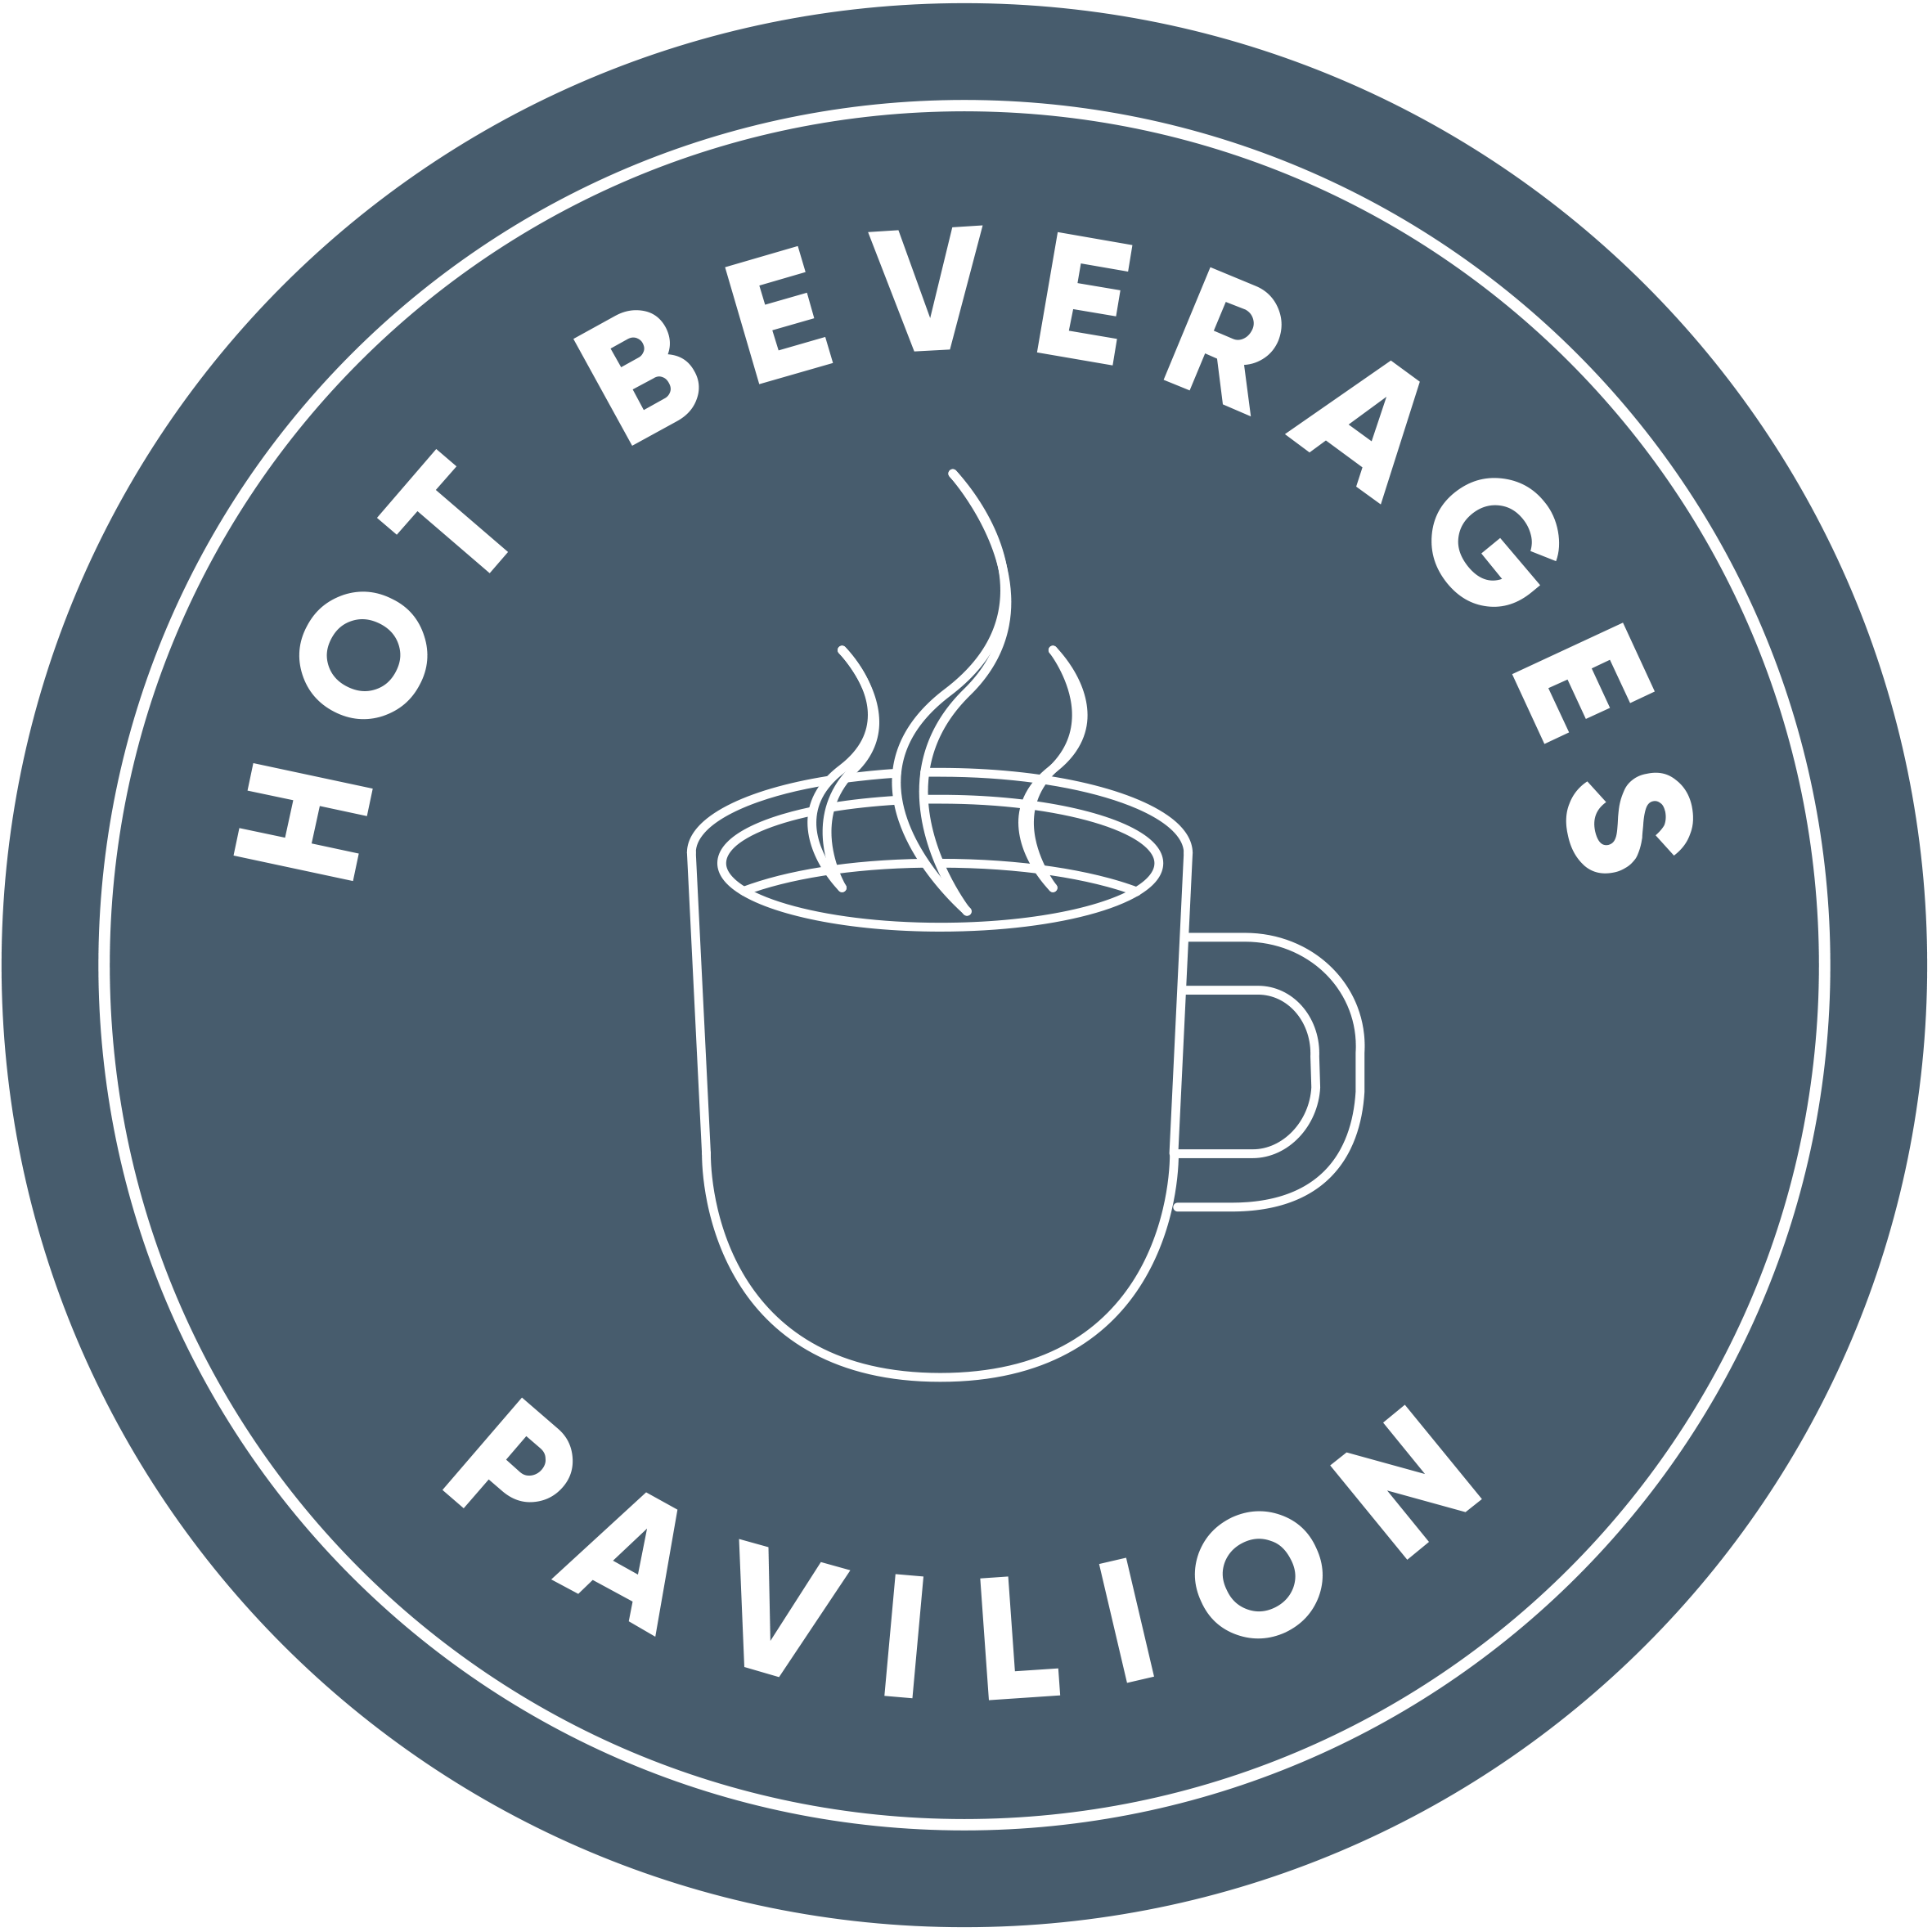 Hot Beverages Pavilion Roundel